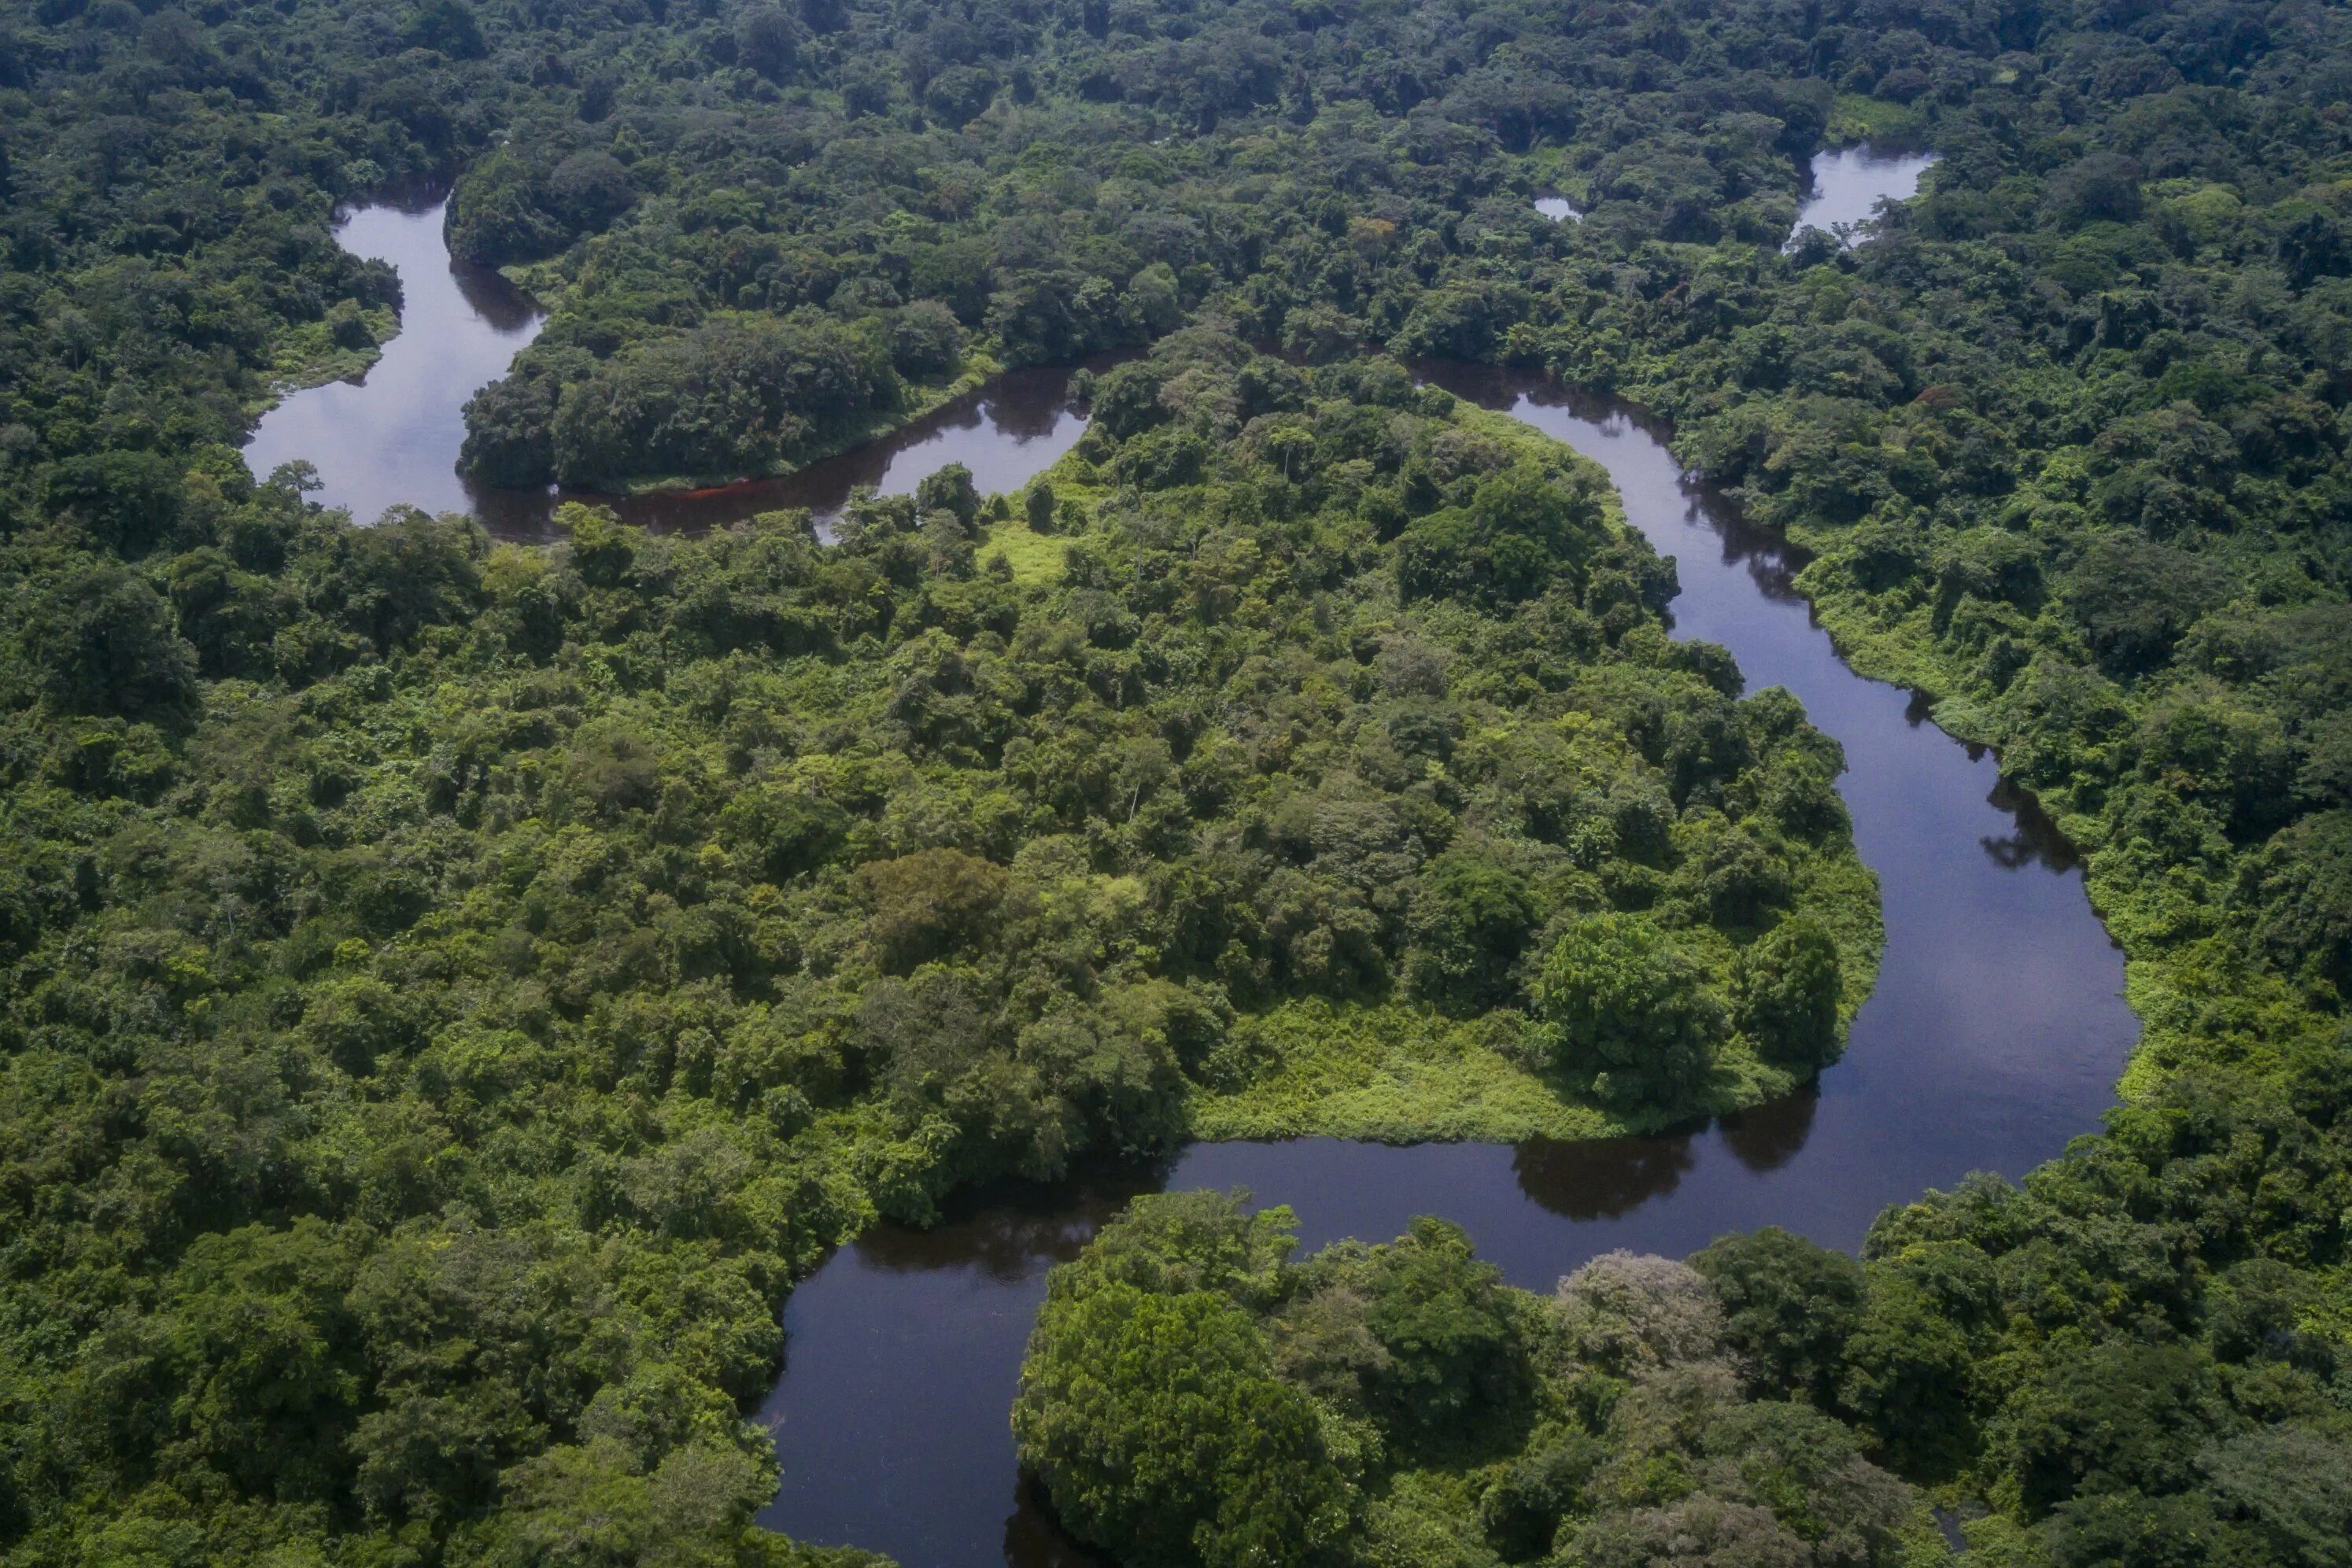 Национальный парк Салонга. Река Конго национальный парк Салонга. Национальный парк Салонга в Африке. Демократическая Республика Конго впадина Конго. Amazon borneo congo